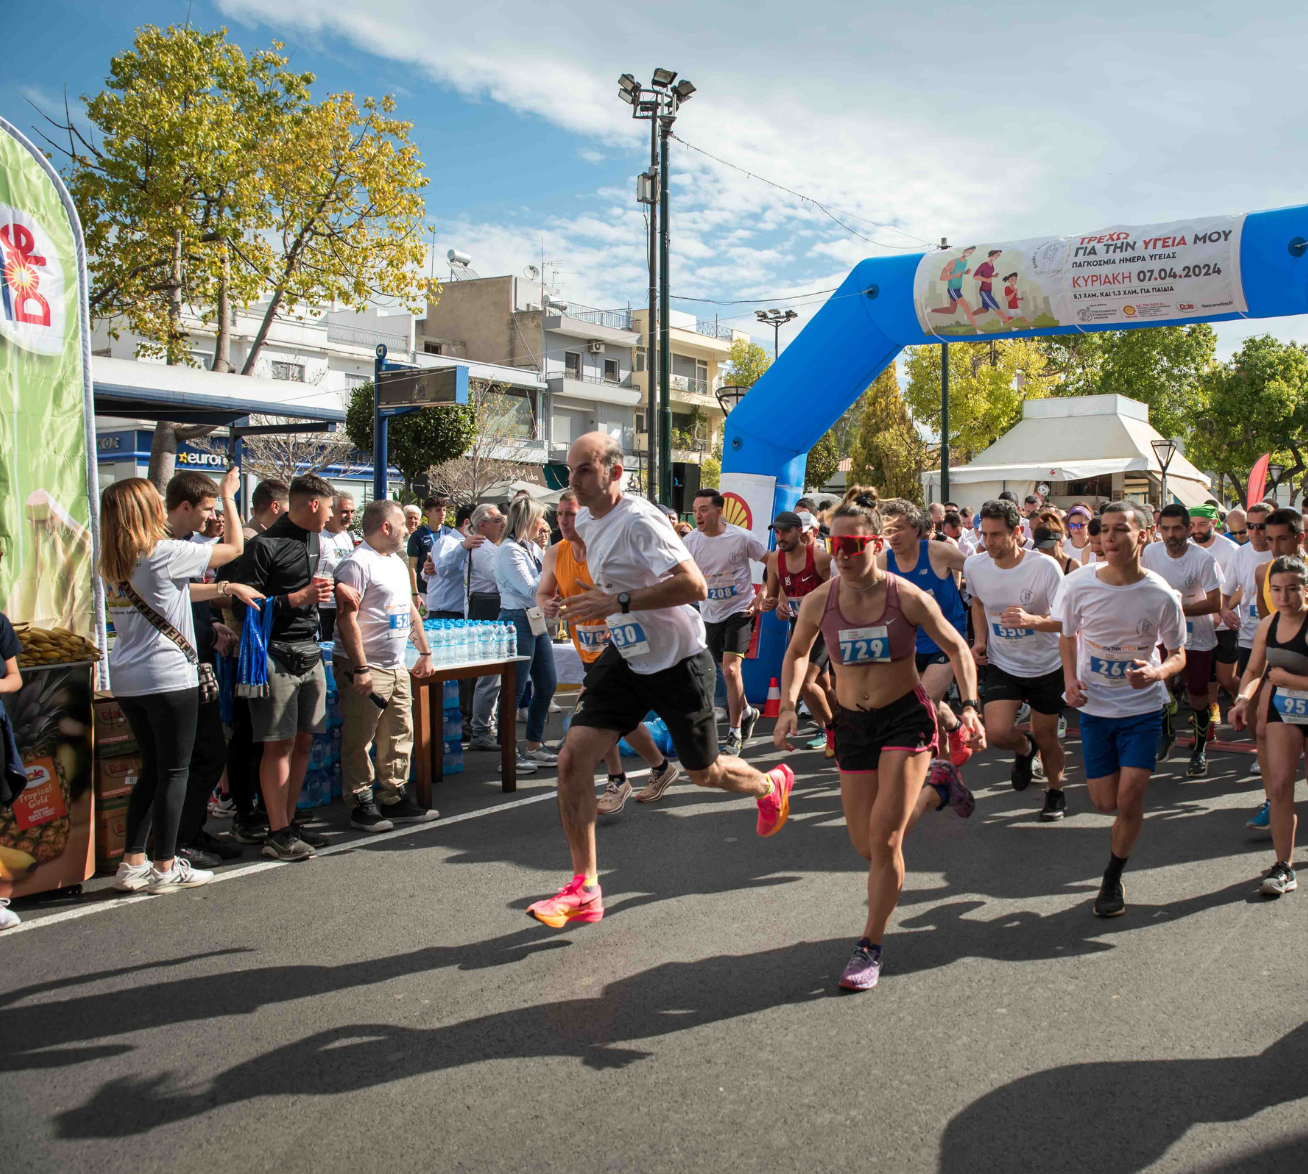 Mε μεγάλη συμμετοχή ο 1ος αγώνας δρόμου «Τρέχω για την υγεία μου». Δήμαρχος Ιλίου: «Δέσμευση μας η προαγωγή του αθλητισμού και της υγείας»